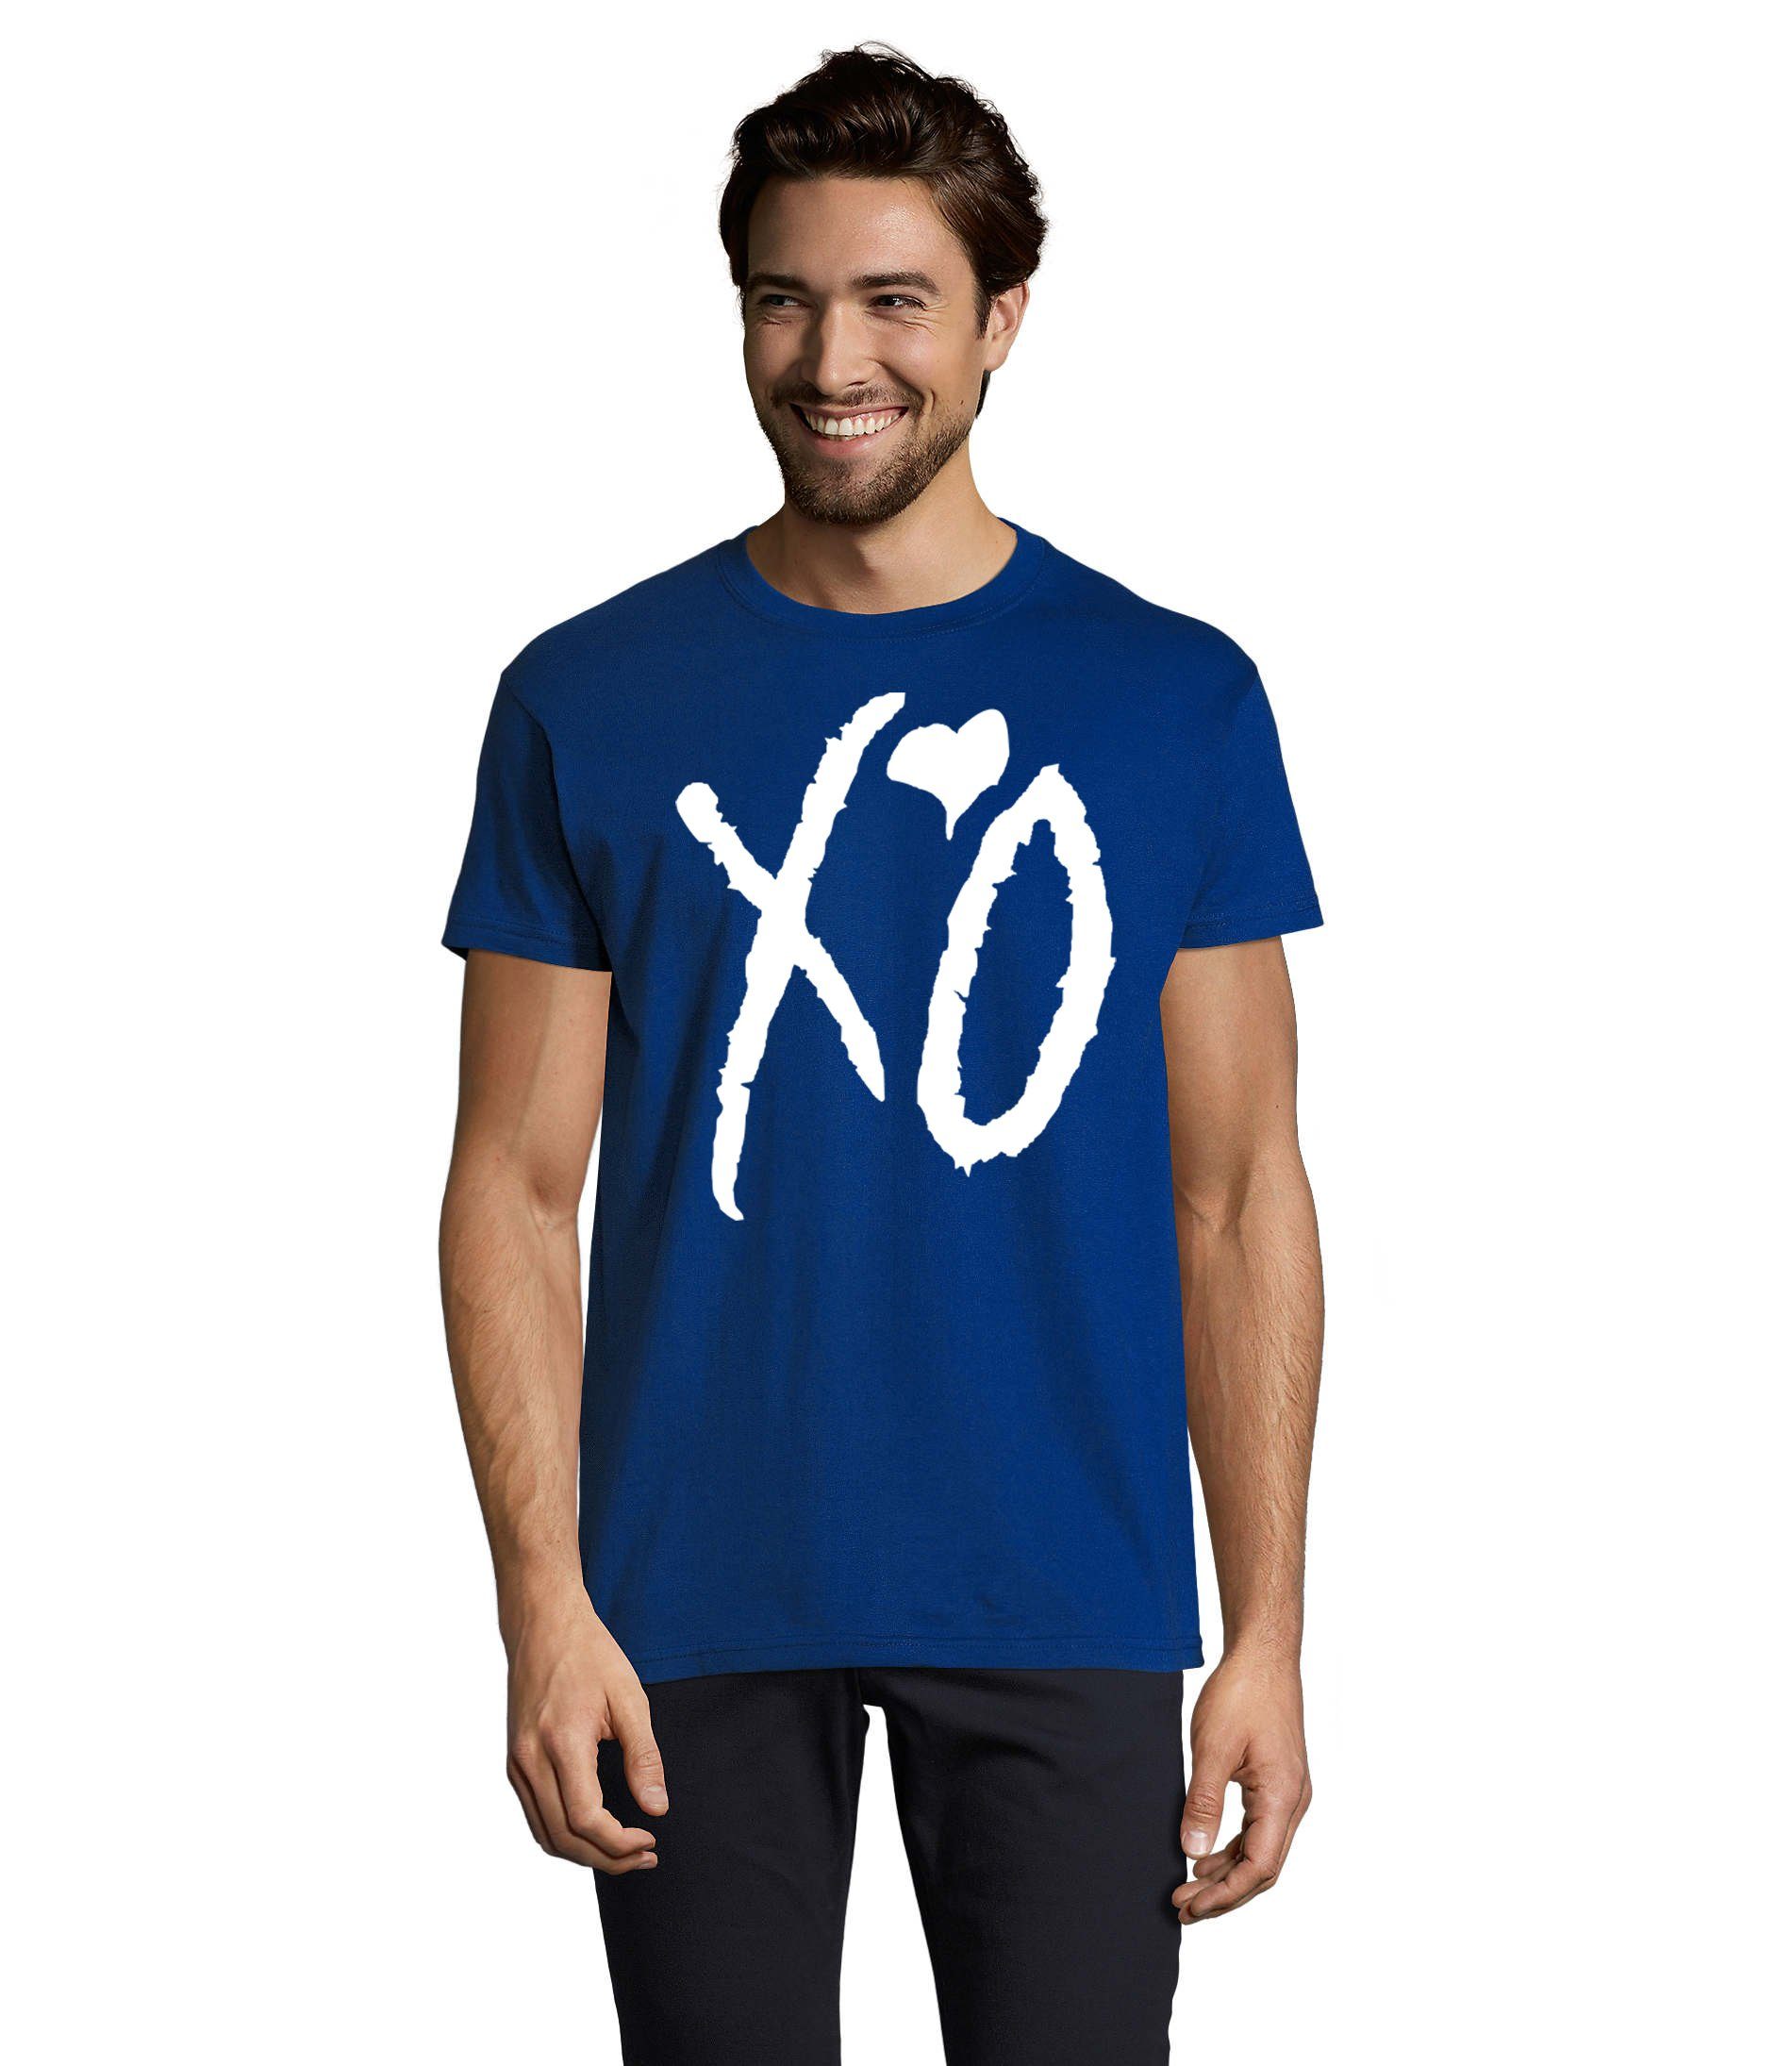 Blondie & Brownie T-Shirt Herren XO Kisses Hugs Weeknd Starboy Musik Fan Festival Royalblau